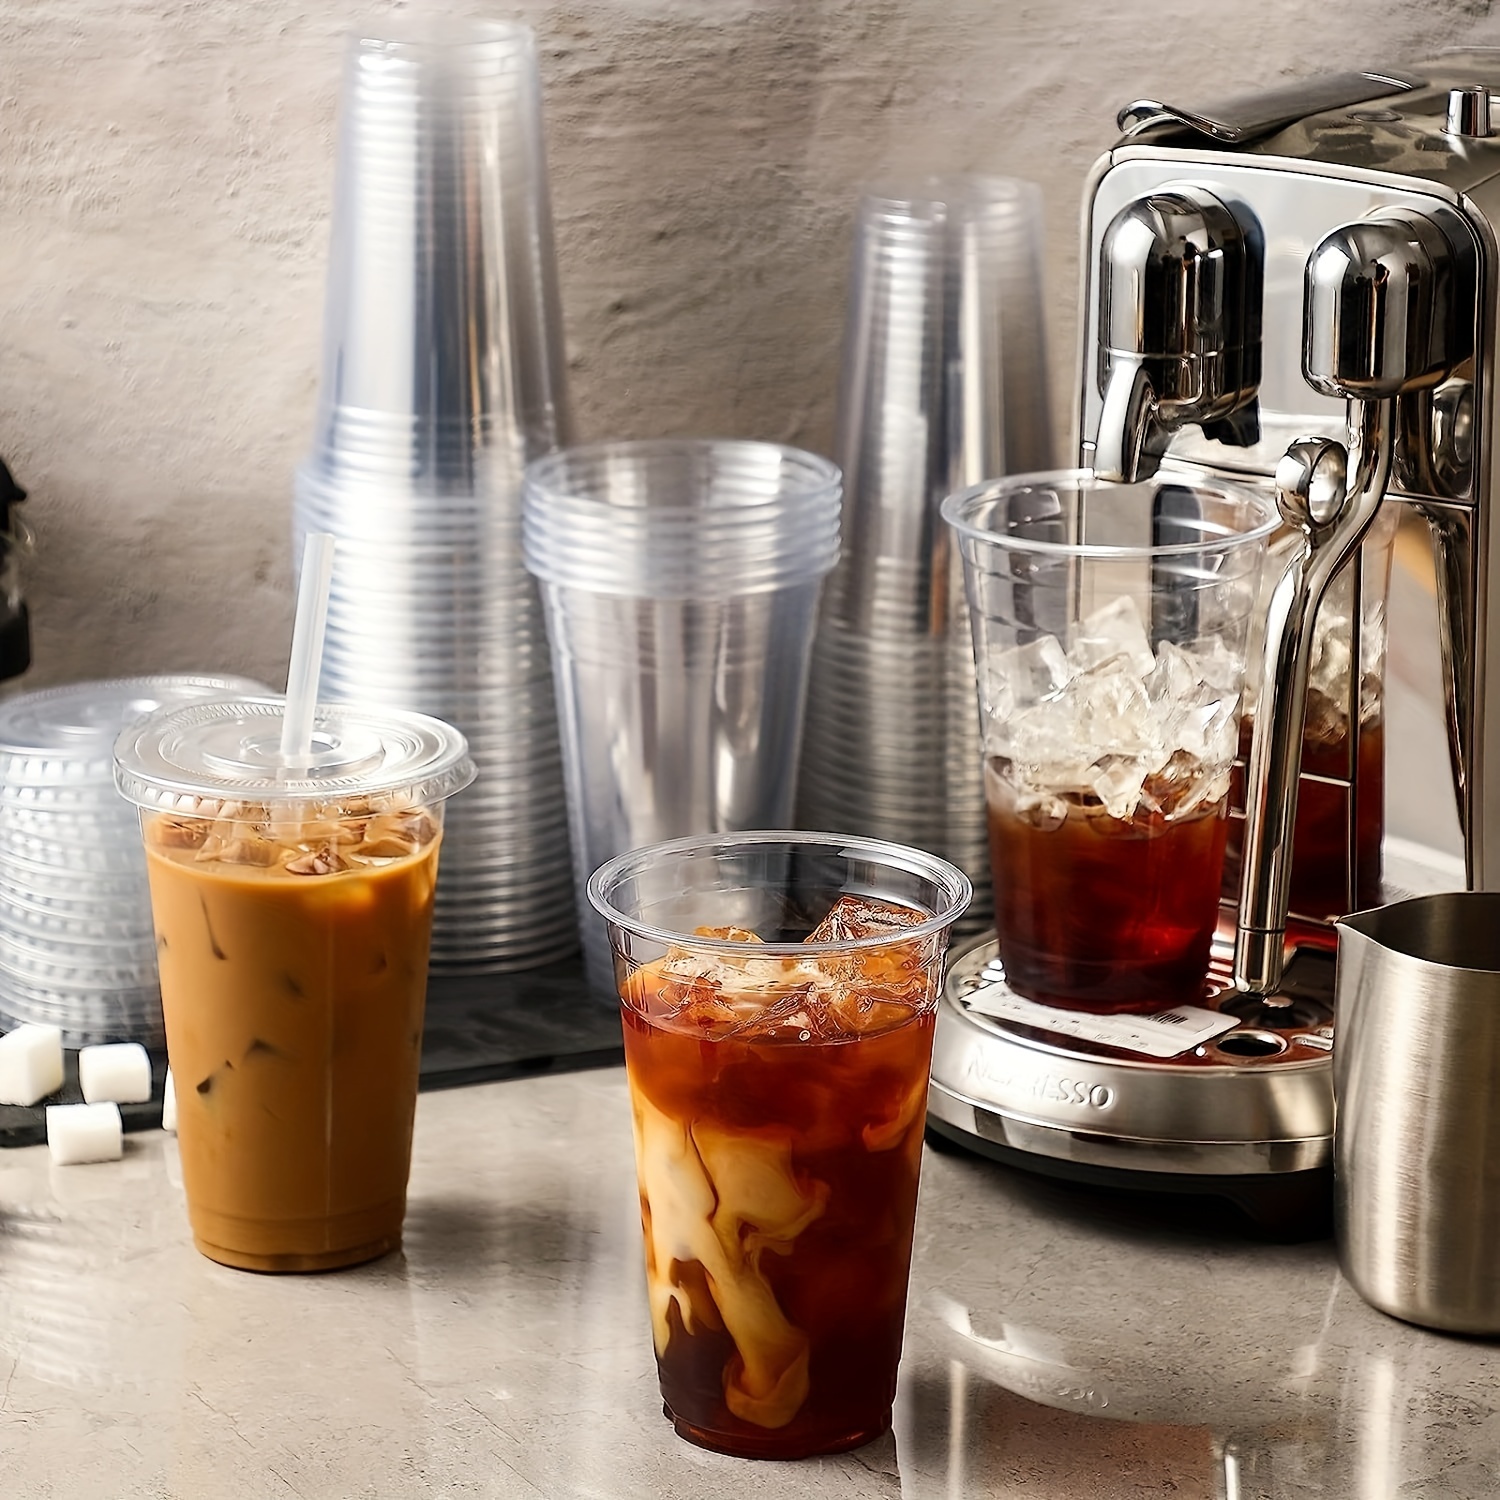 [100 unidades] Vasos de plástico PET transparente, vasos desechables para  café helado, bebidas frías…Ver más [100 unidades] Vasos de plástico PET